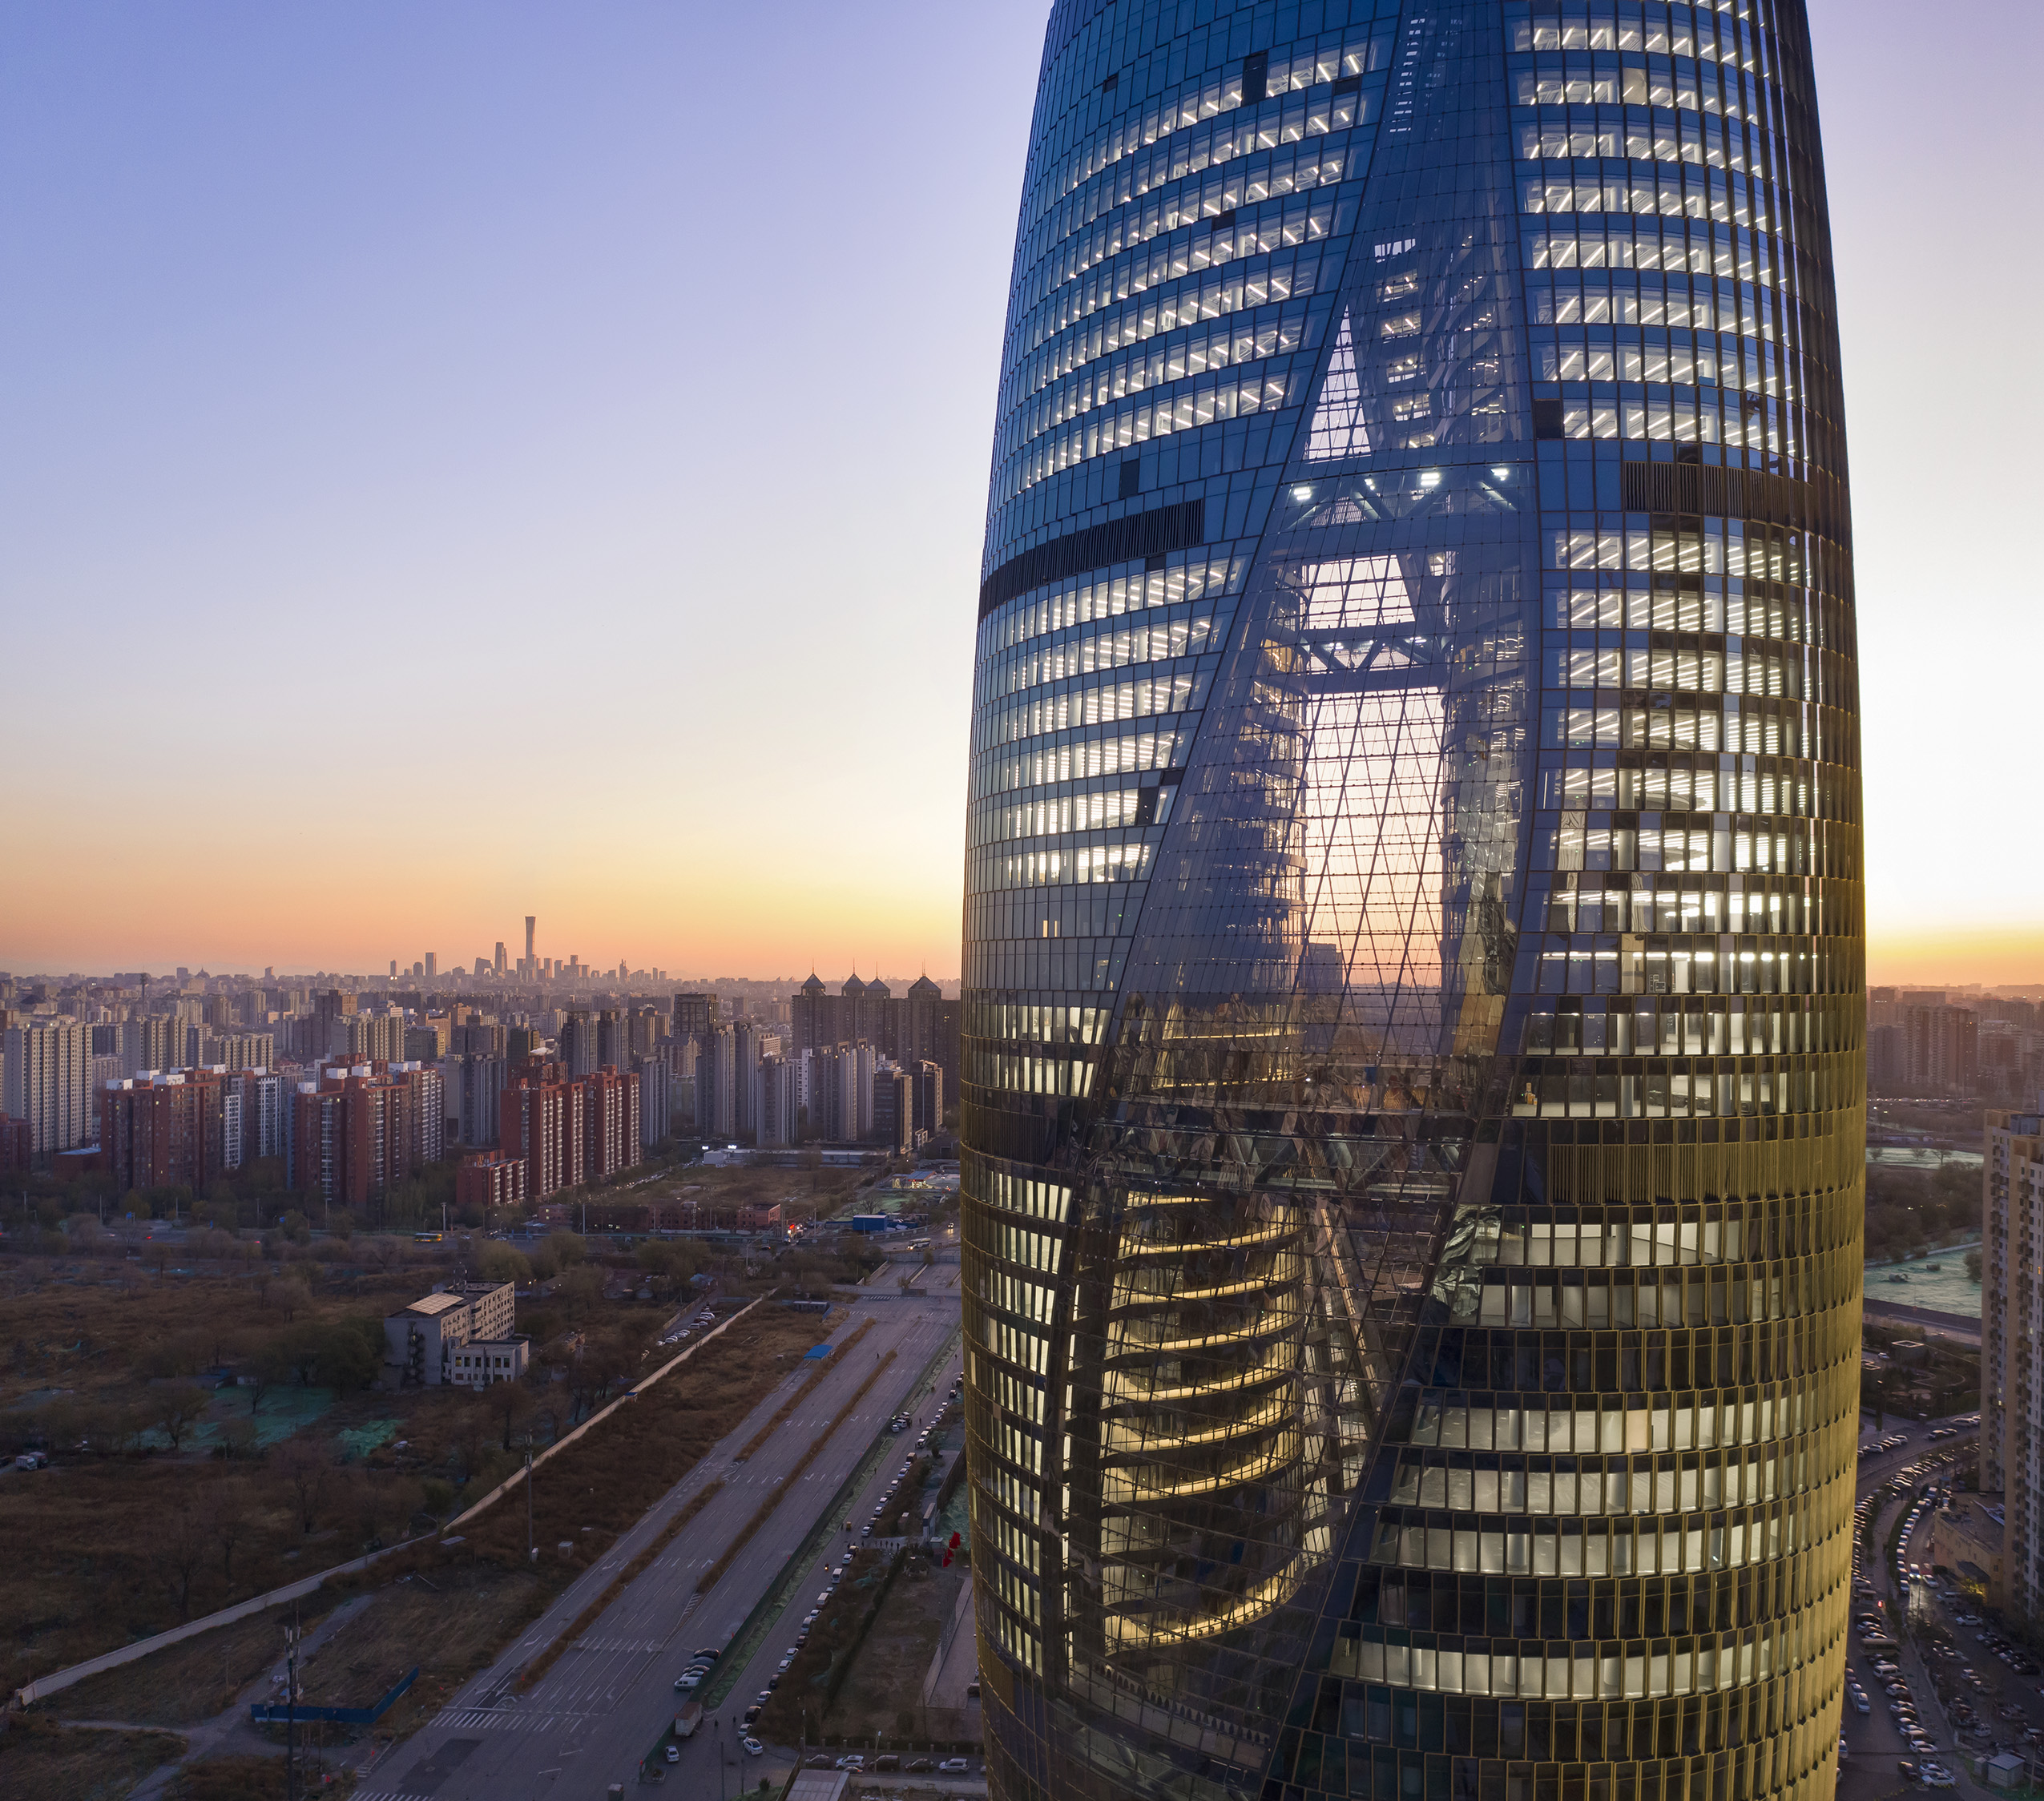 Leeza SOHO by Zaha Hadid Architects, Beijing, China